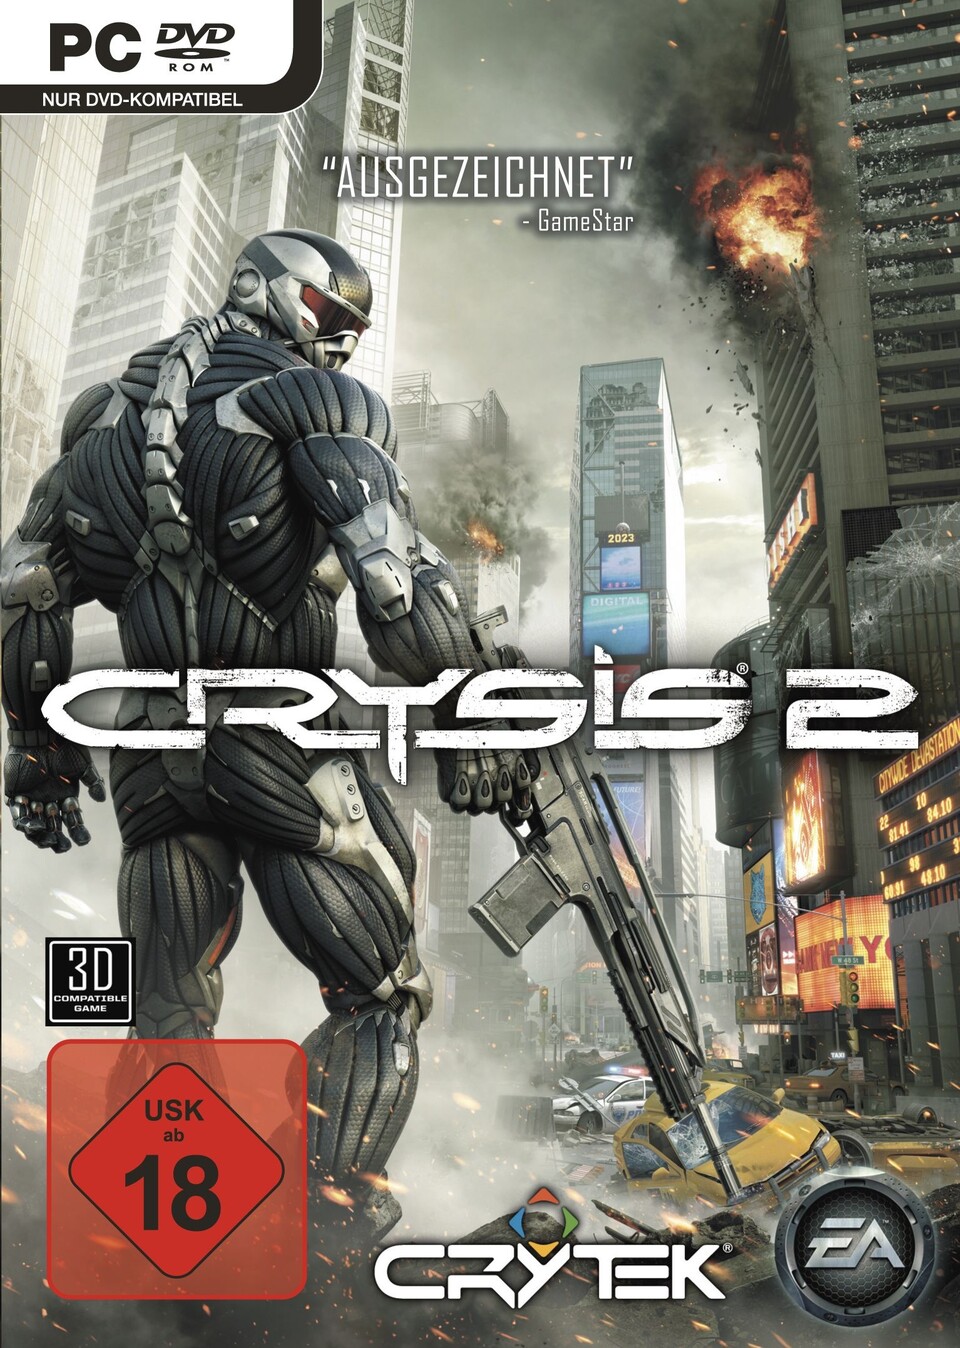 Crysis 2 sorgt beim Deutschen Computerspielpreis für einen Eklat.